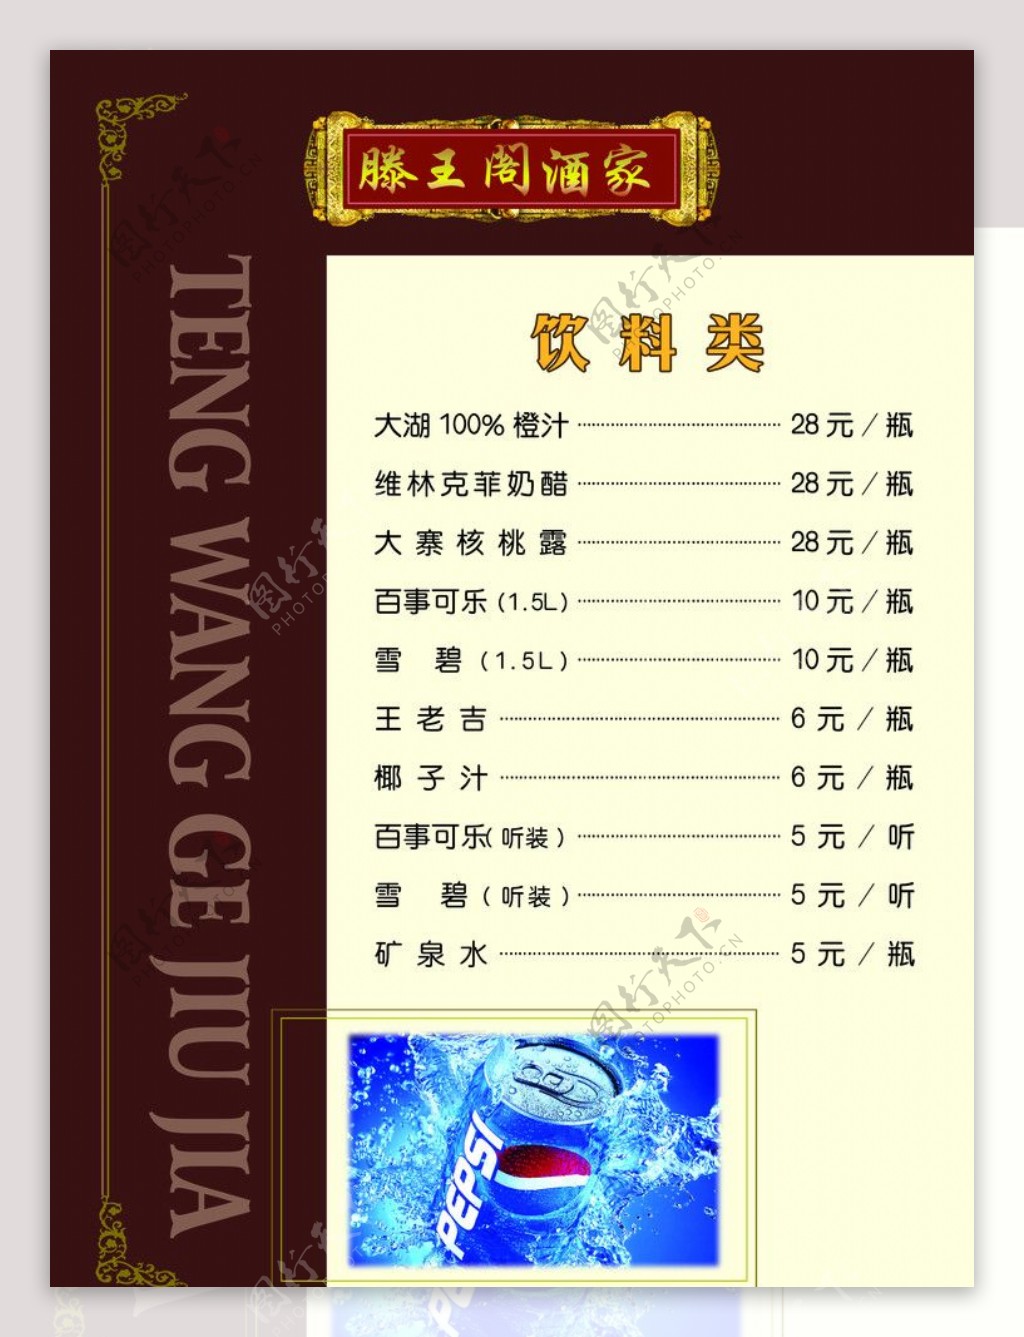 精品凉菜古典菜单中国风菜谱图片_菜谱设计_画册装帧-图行天下素材网